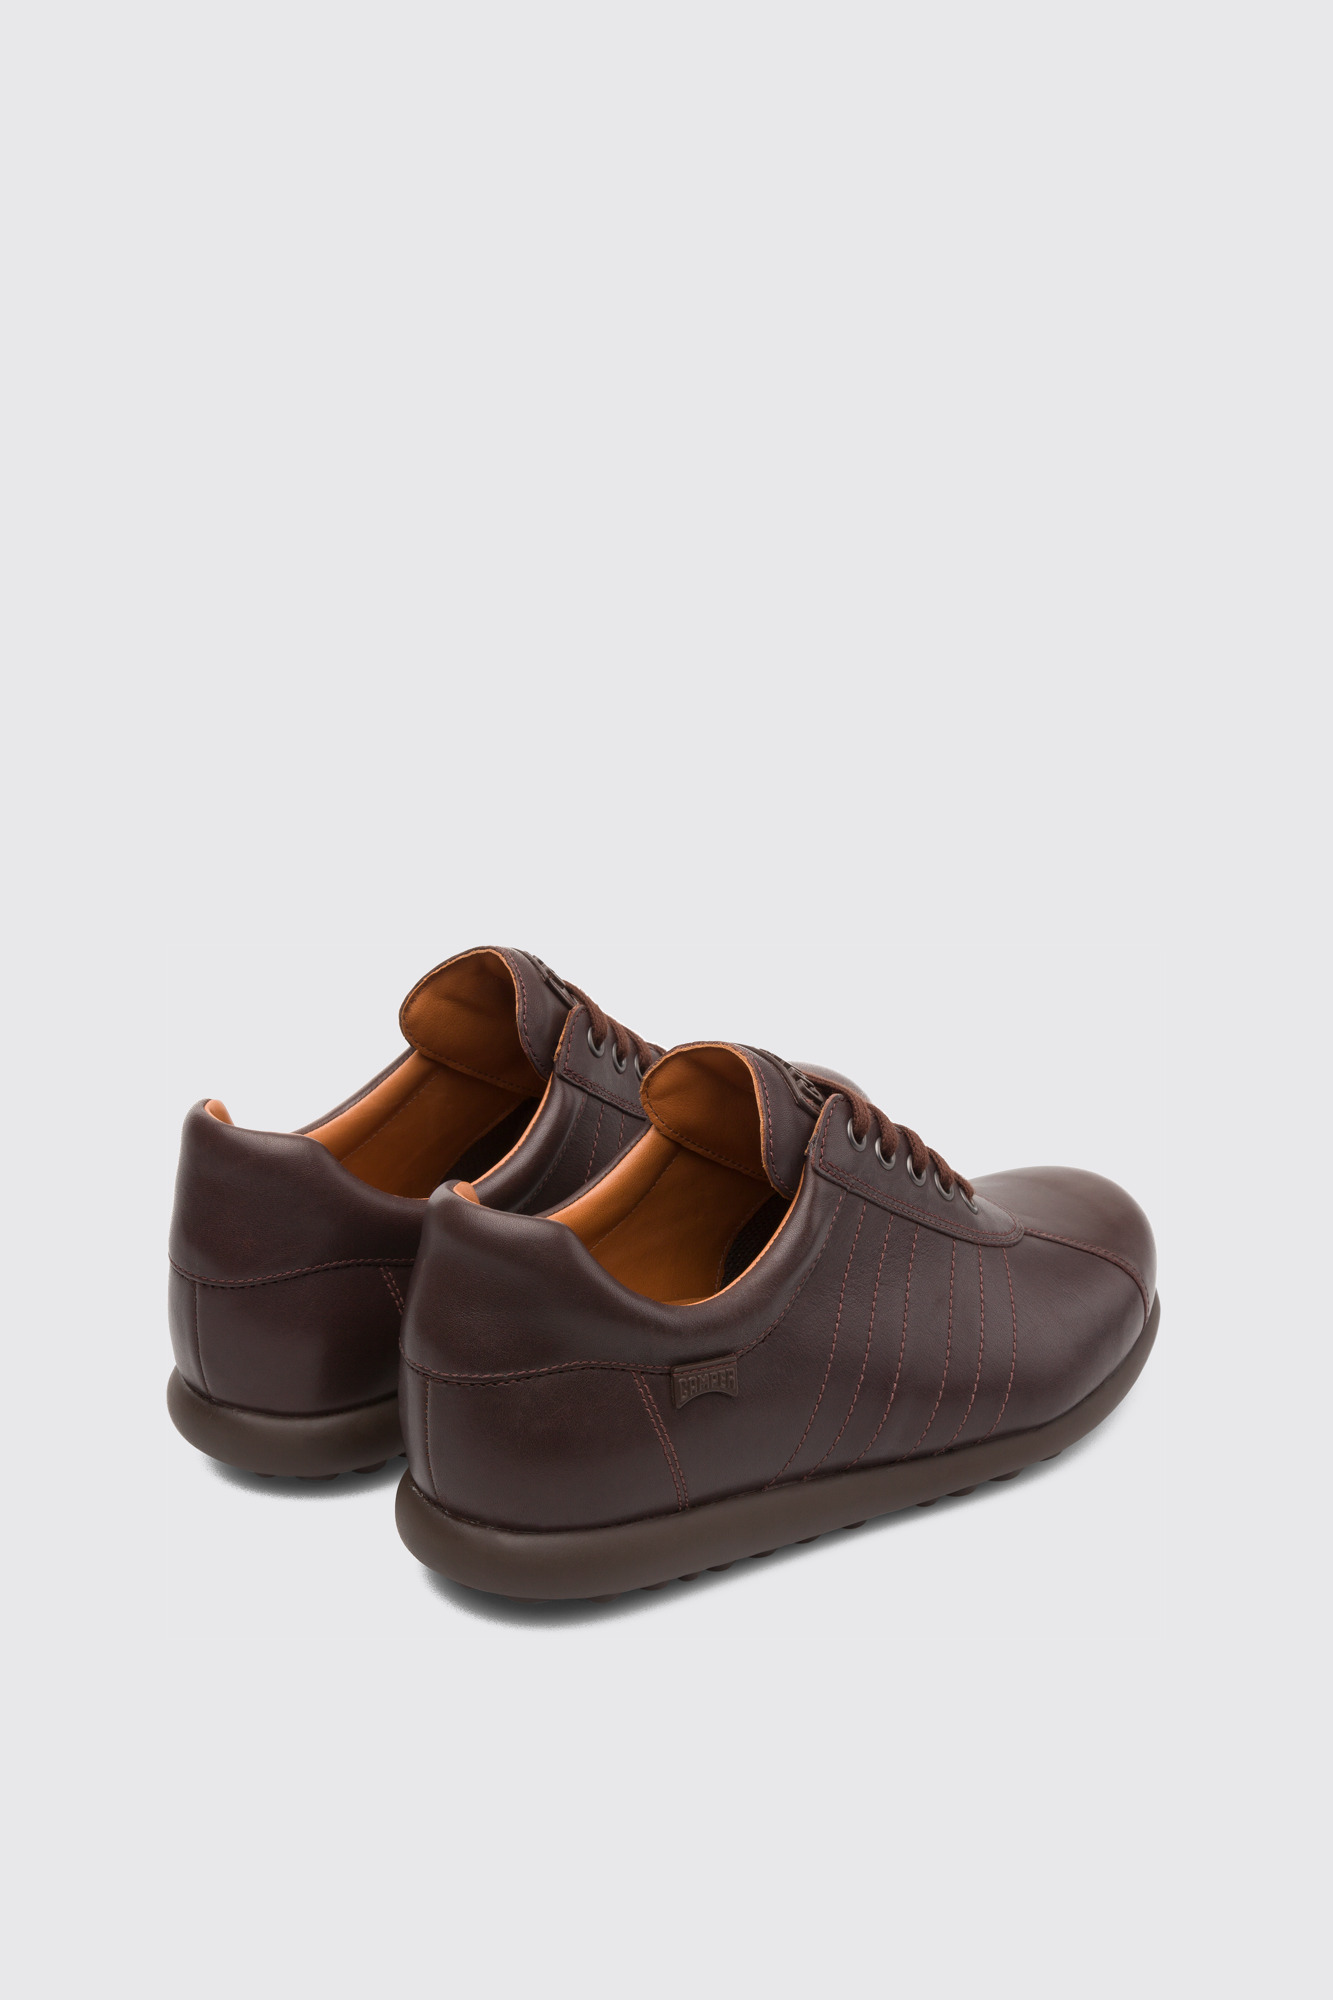 Shoes for Men - Spring / Summer Collection - Camper Australia